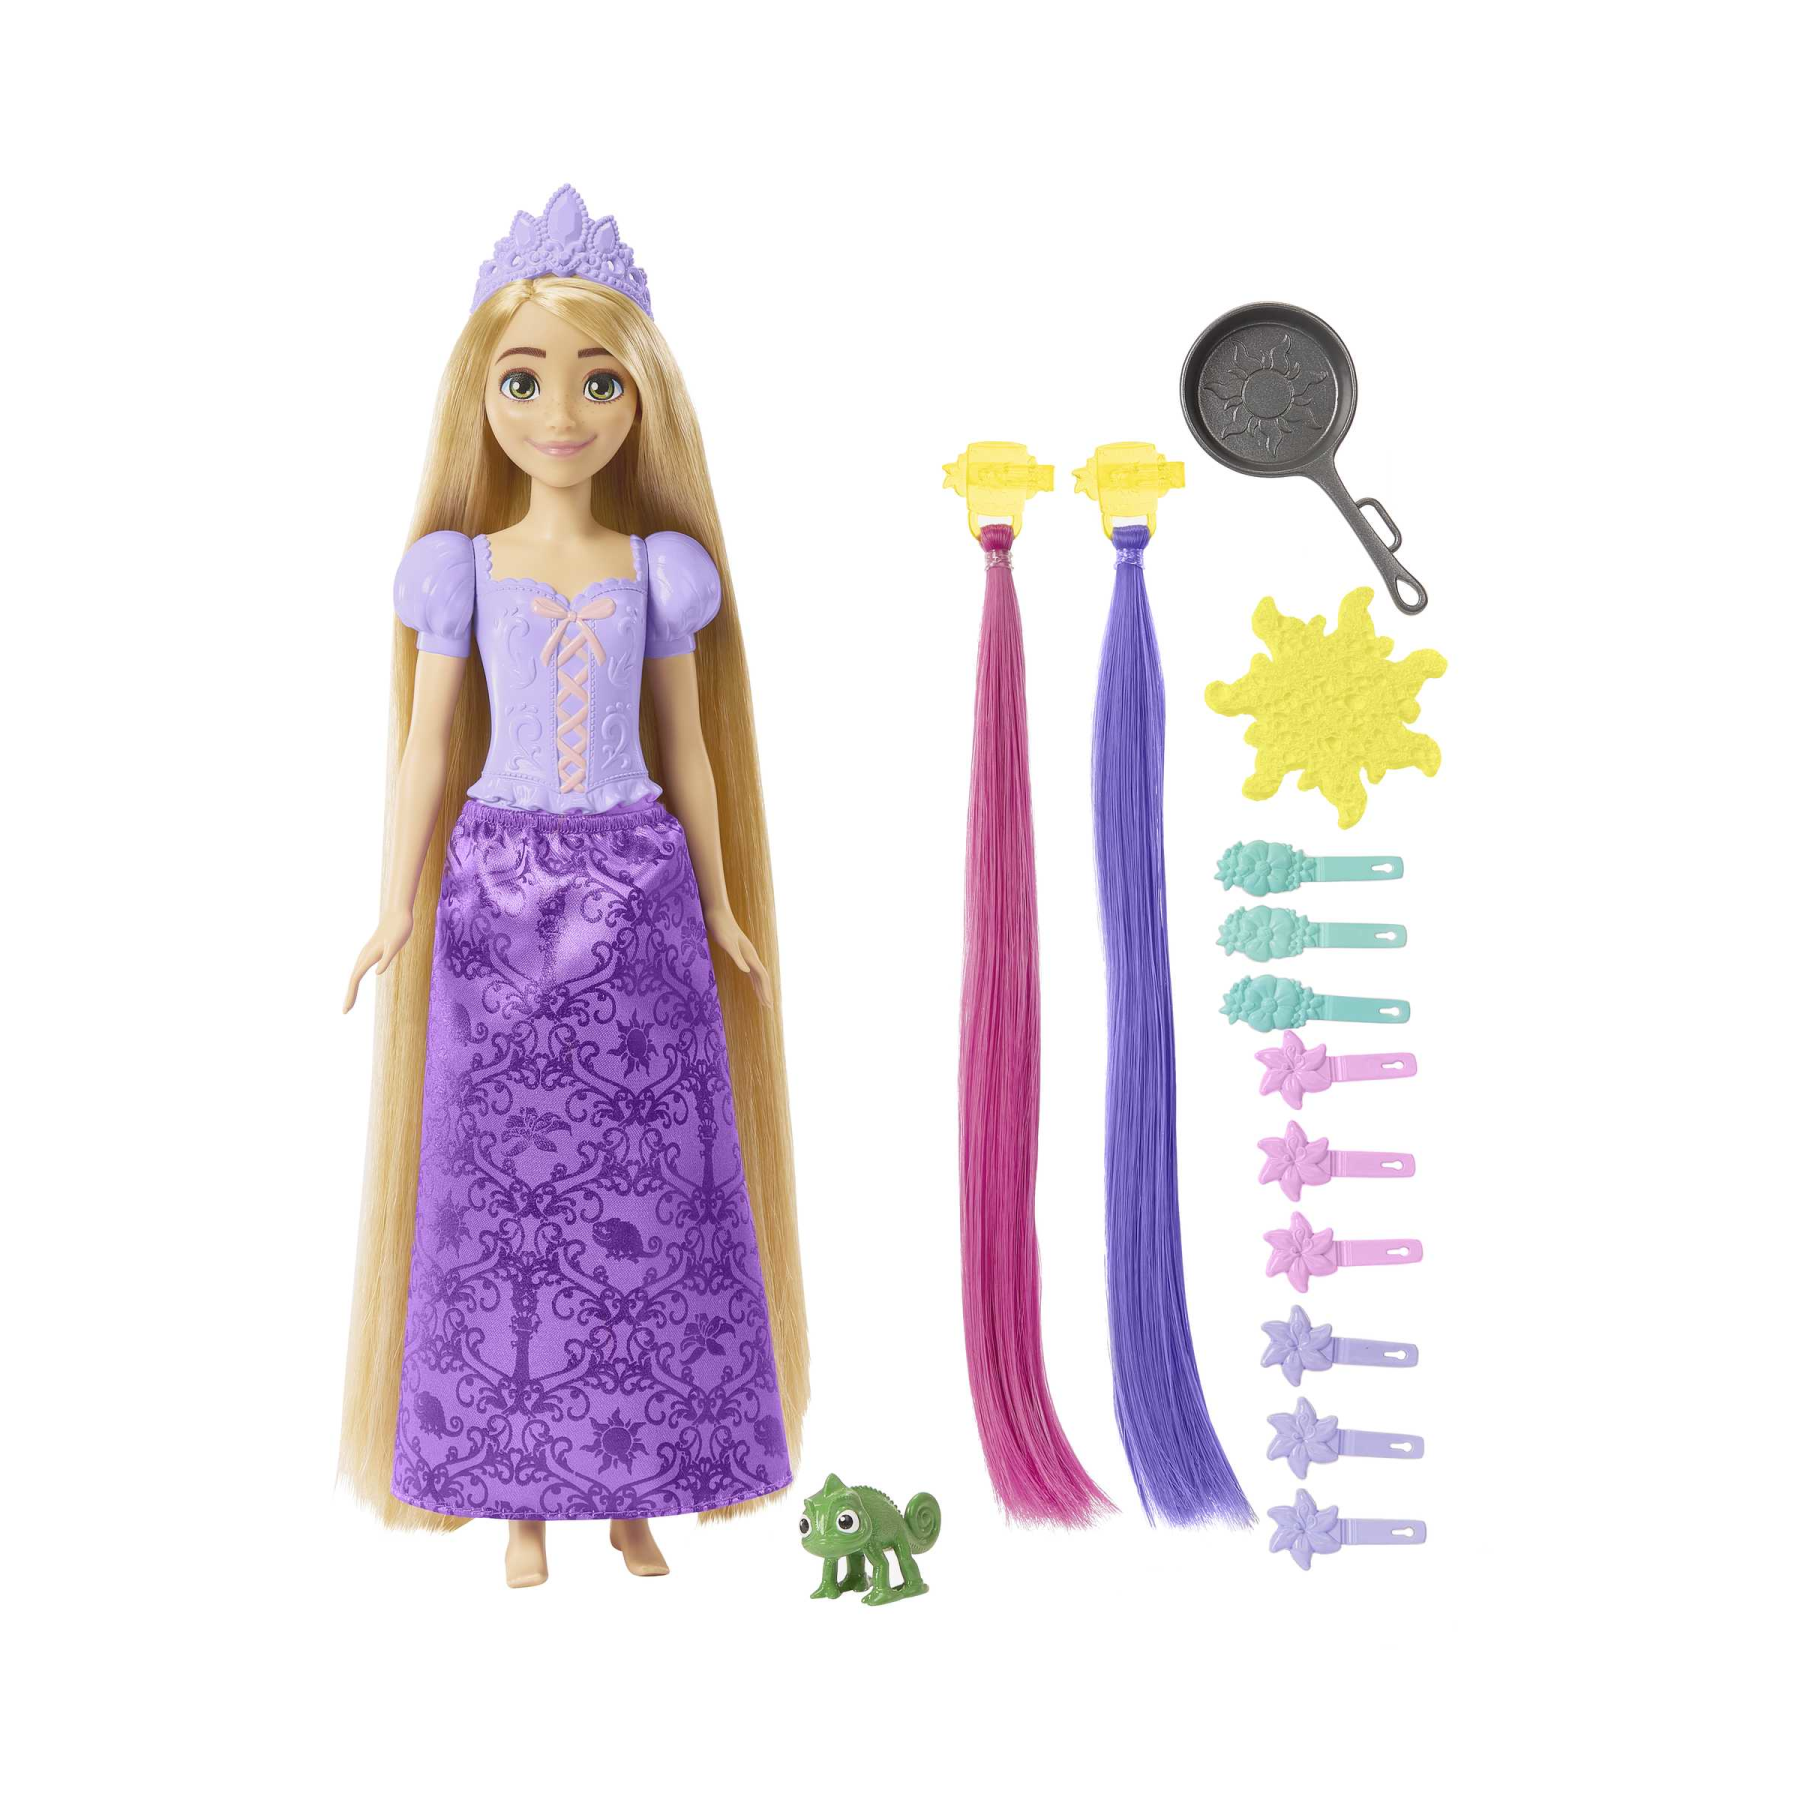 Disney princess - rapunzel chioma magica, bambola con lunghissimi capelli cambia-colore e accessori, giocattolo per bambini, 3+ anni, hlw18 - DISNEY PRINCESS